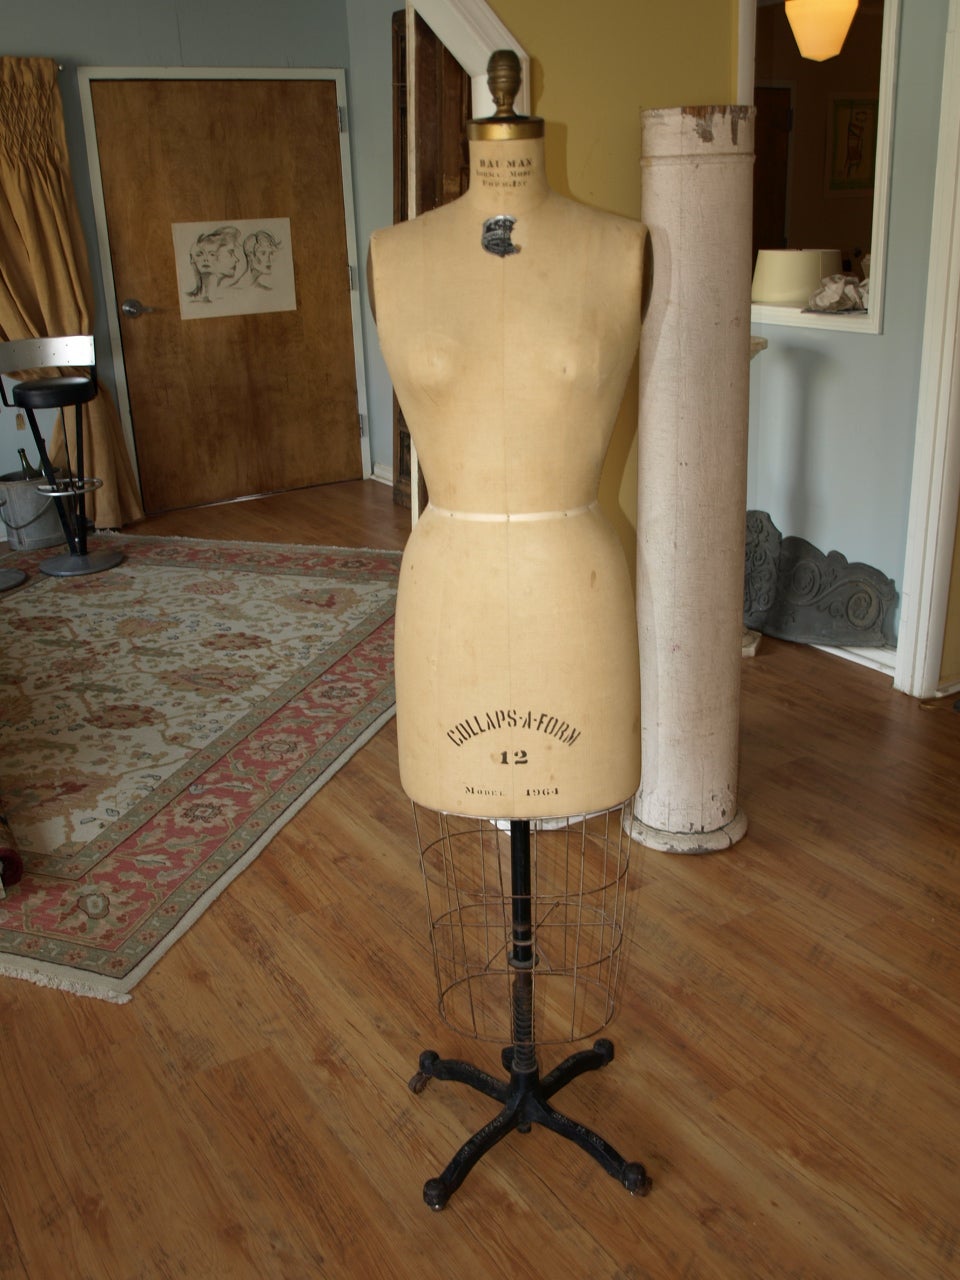 Vintage "Collaps-A-Form" Dressmaker's Form